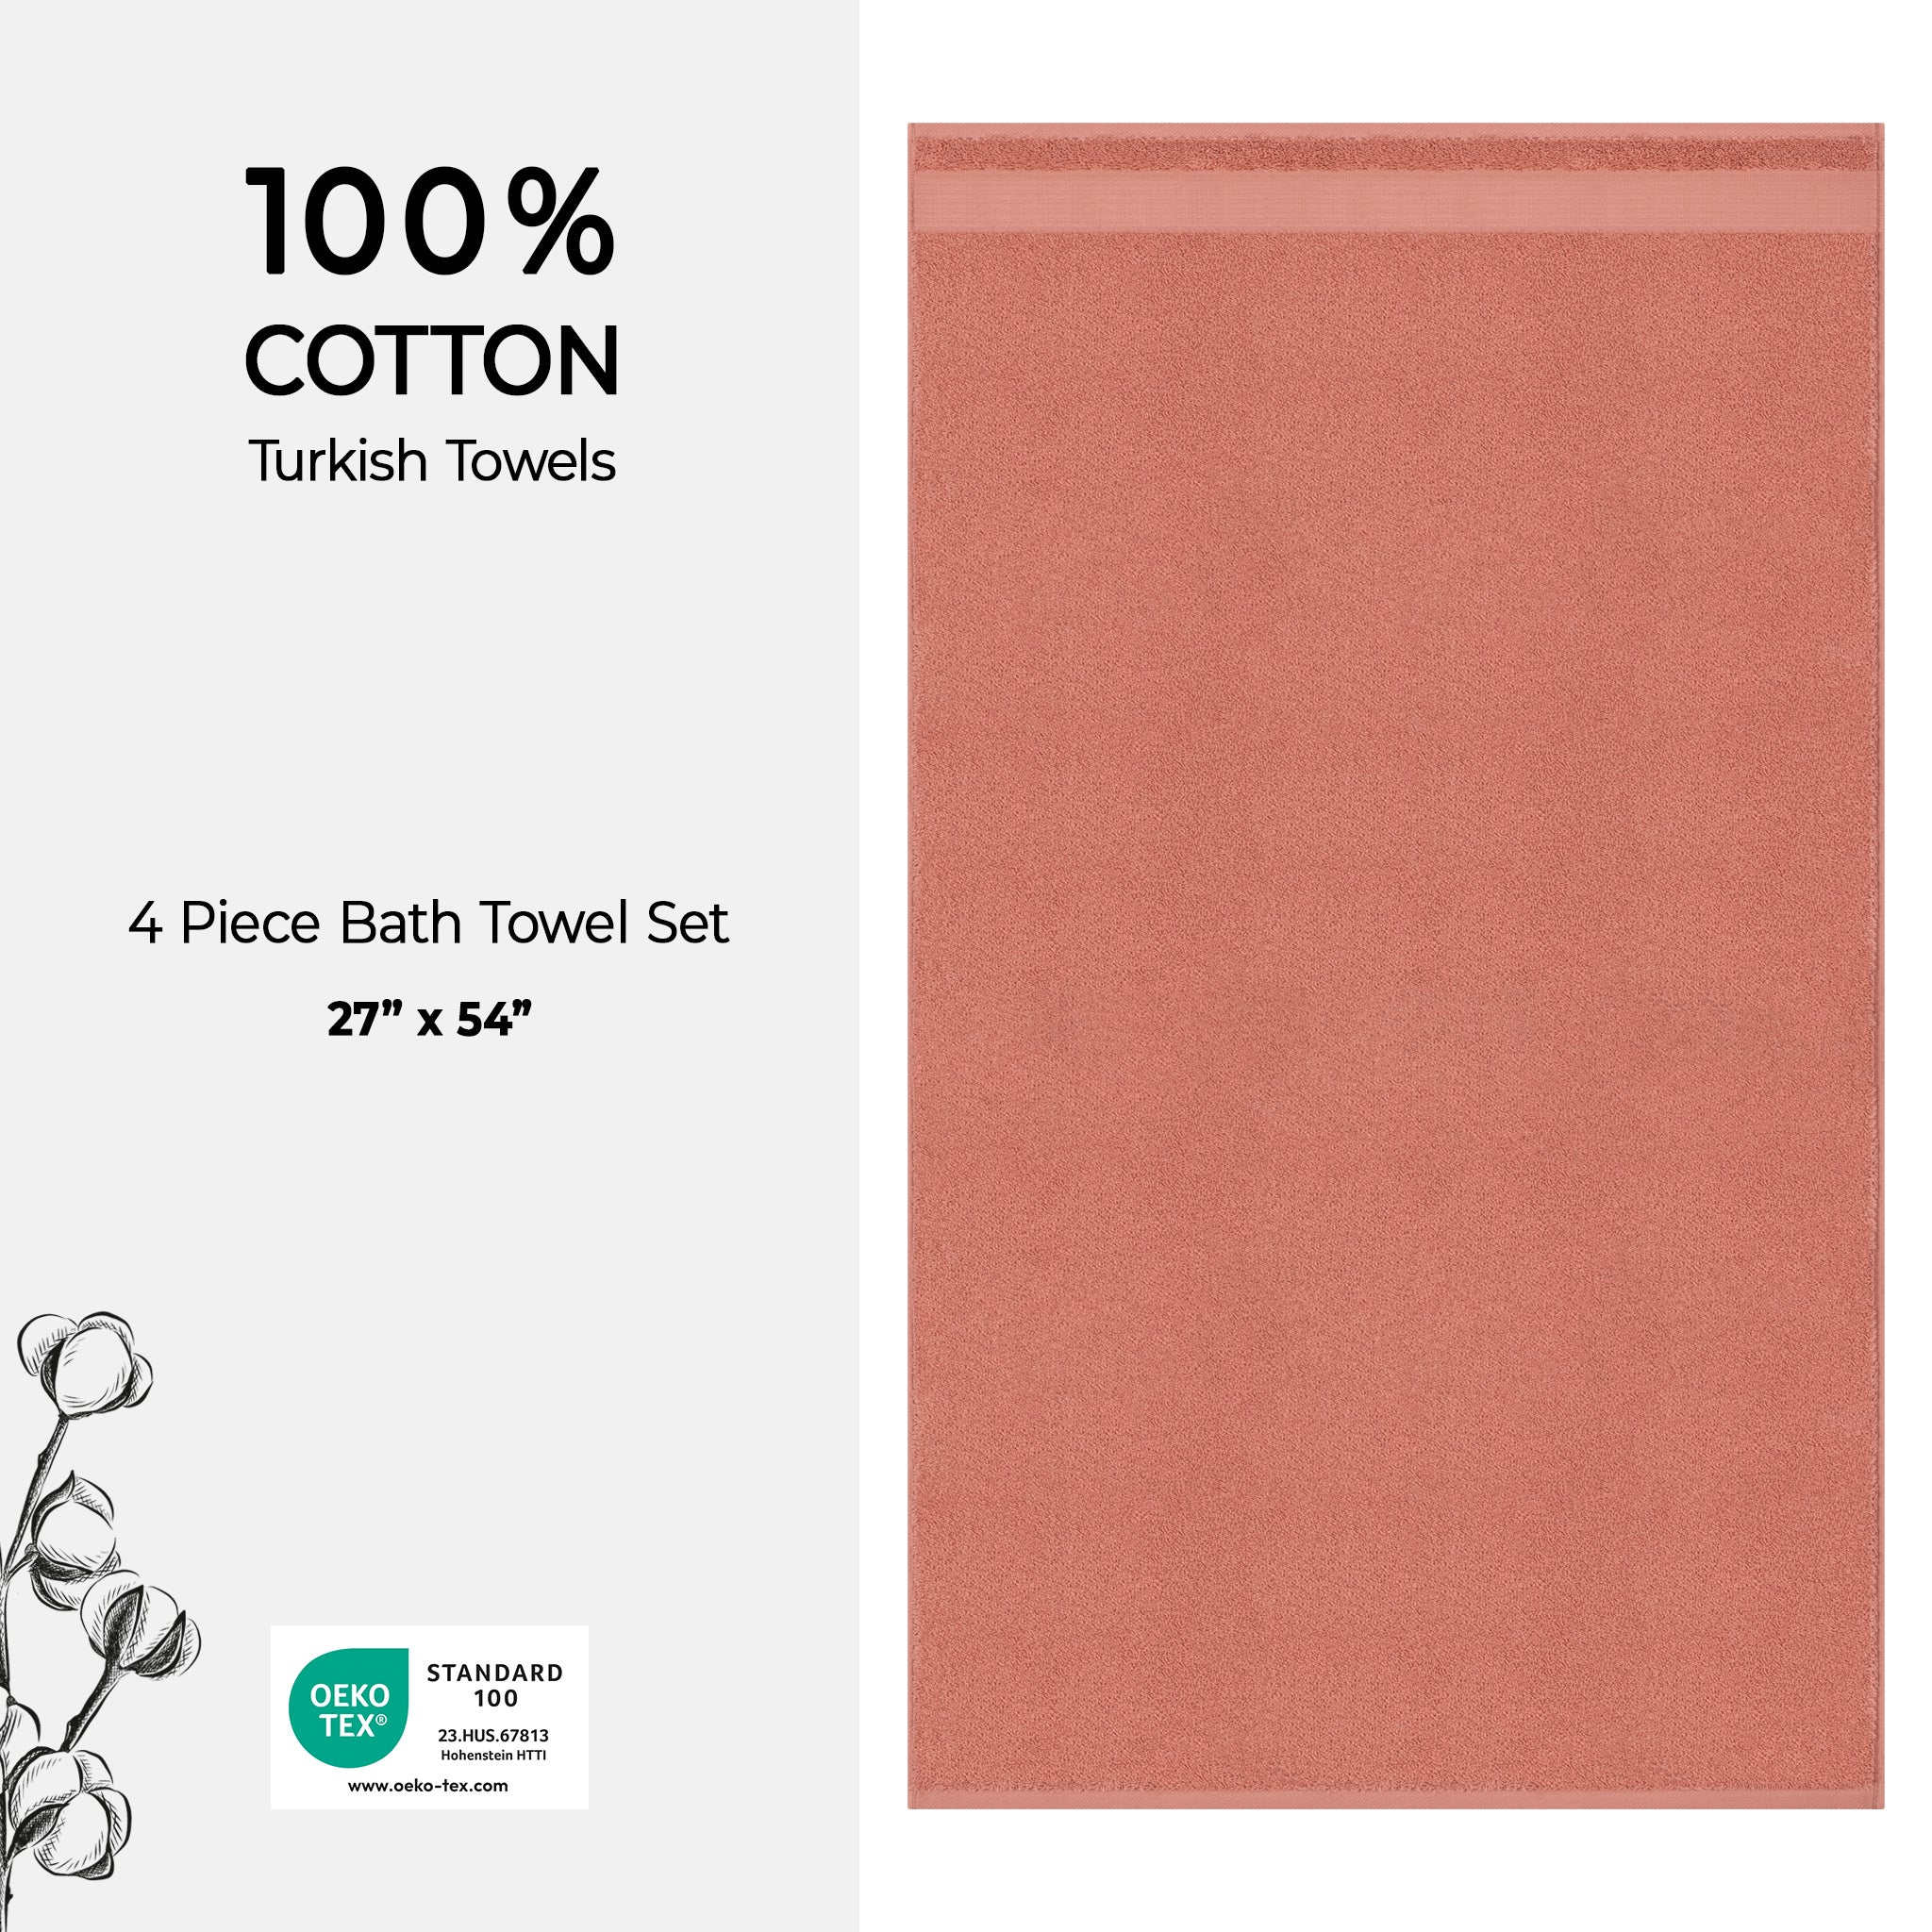 American Soft Linen Bekos 100% Cotton Turkish Towels, 4 Piece Bath Towel Set -coral-04